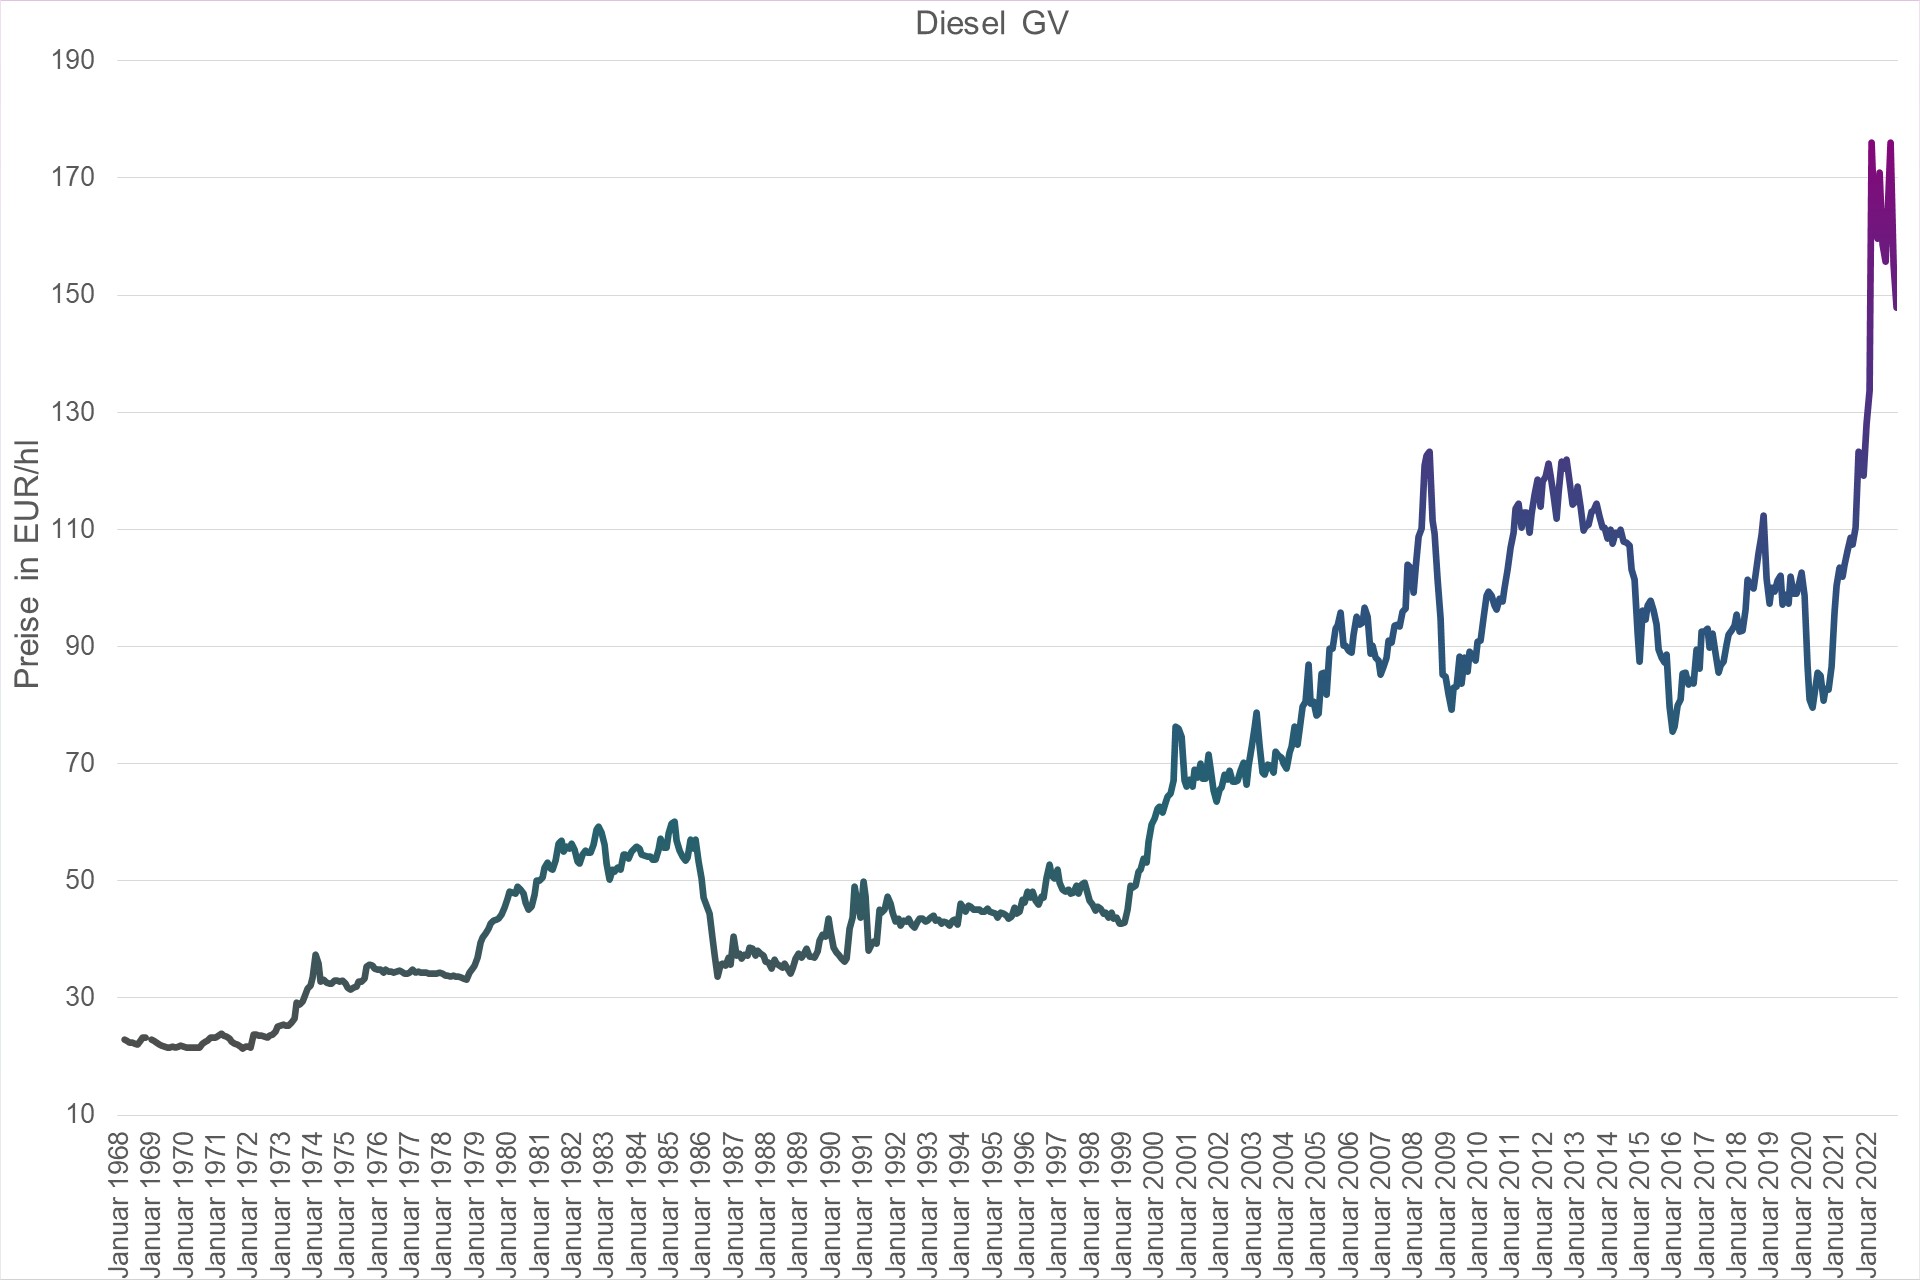 Grafik Preisentwicklung Diesel Großverbraucher